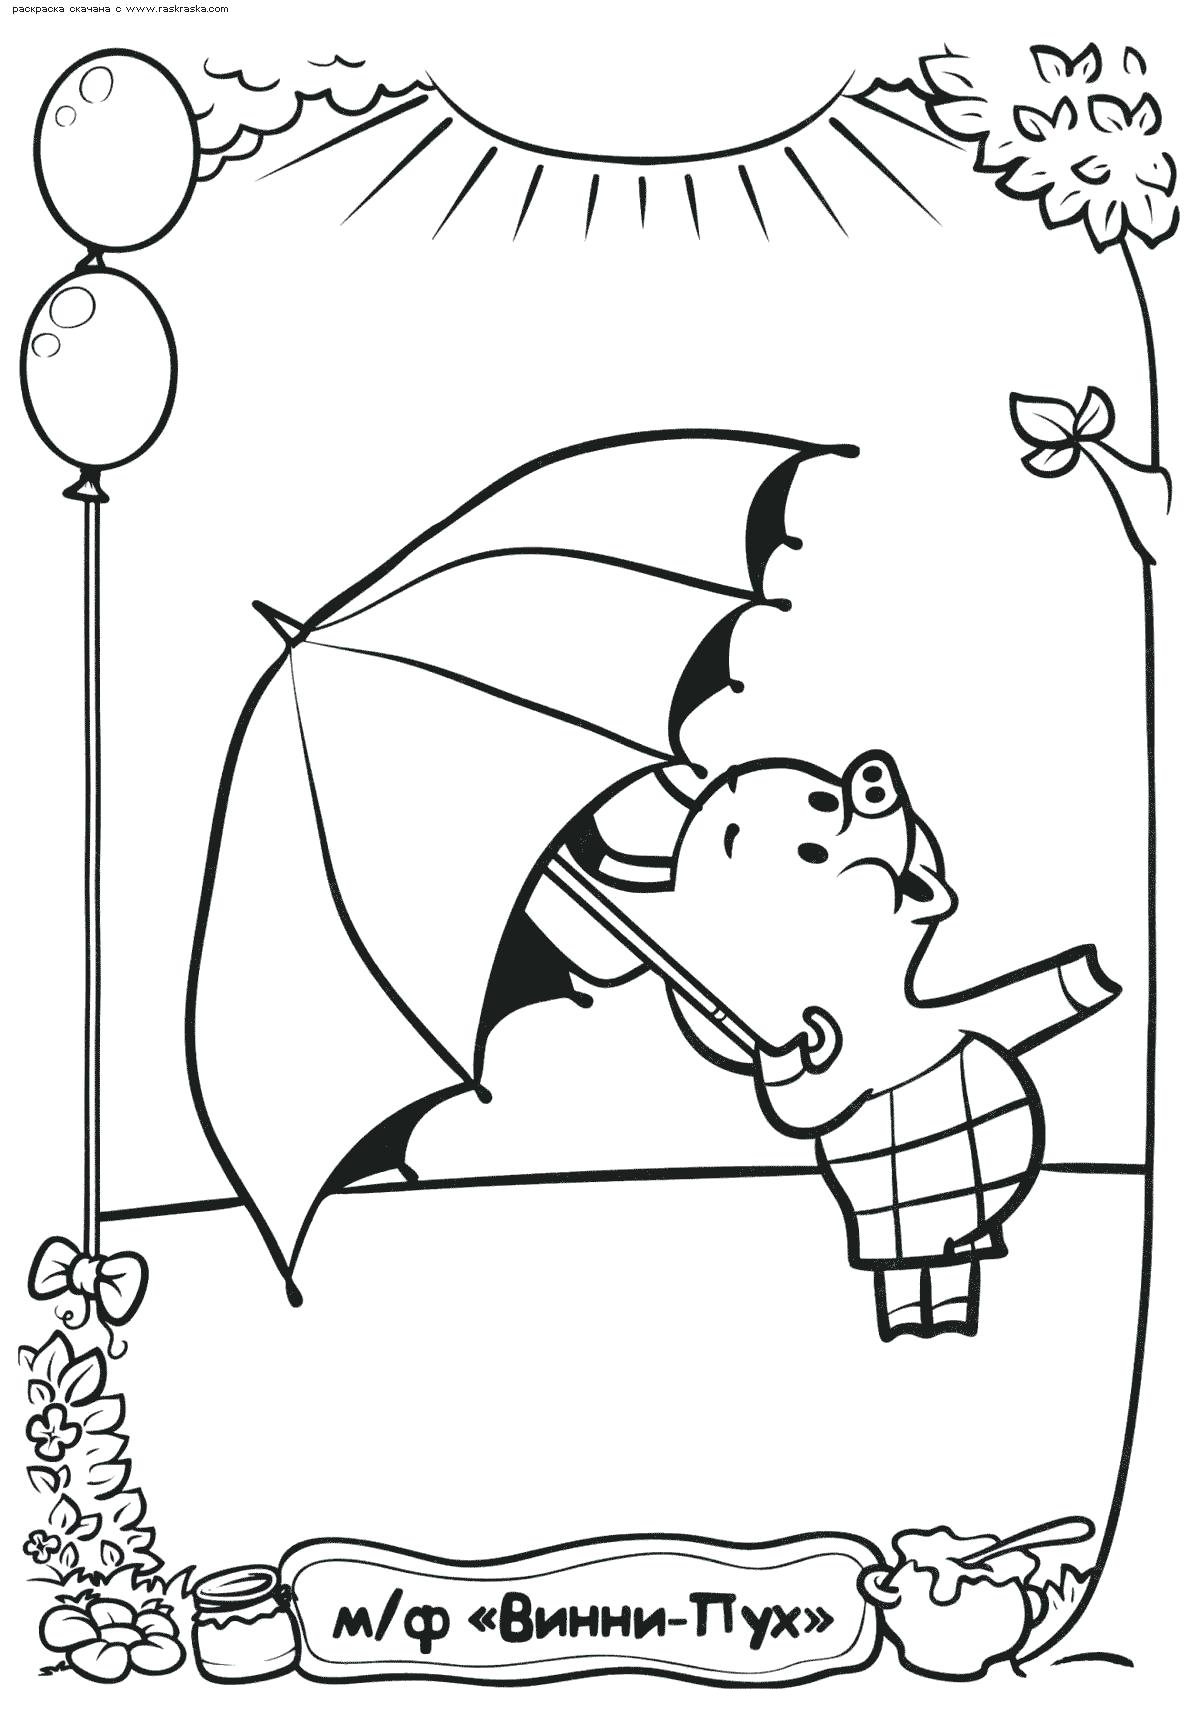 Название: Раскраска Раскраска Пятачок под зонтиком. Раскраска Кажется дождь собирается, поросенок Пятачок раскраска для детей из мультфильма. Категория: Пятачок. Теги: Пятачок.